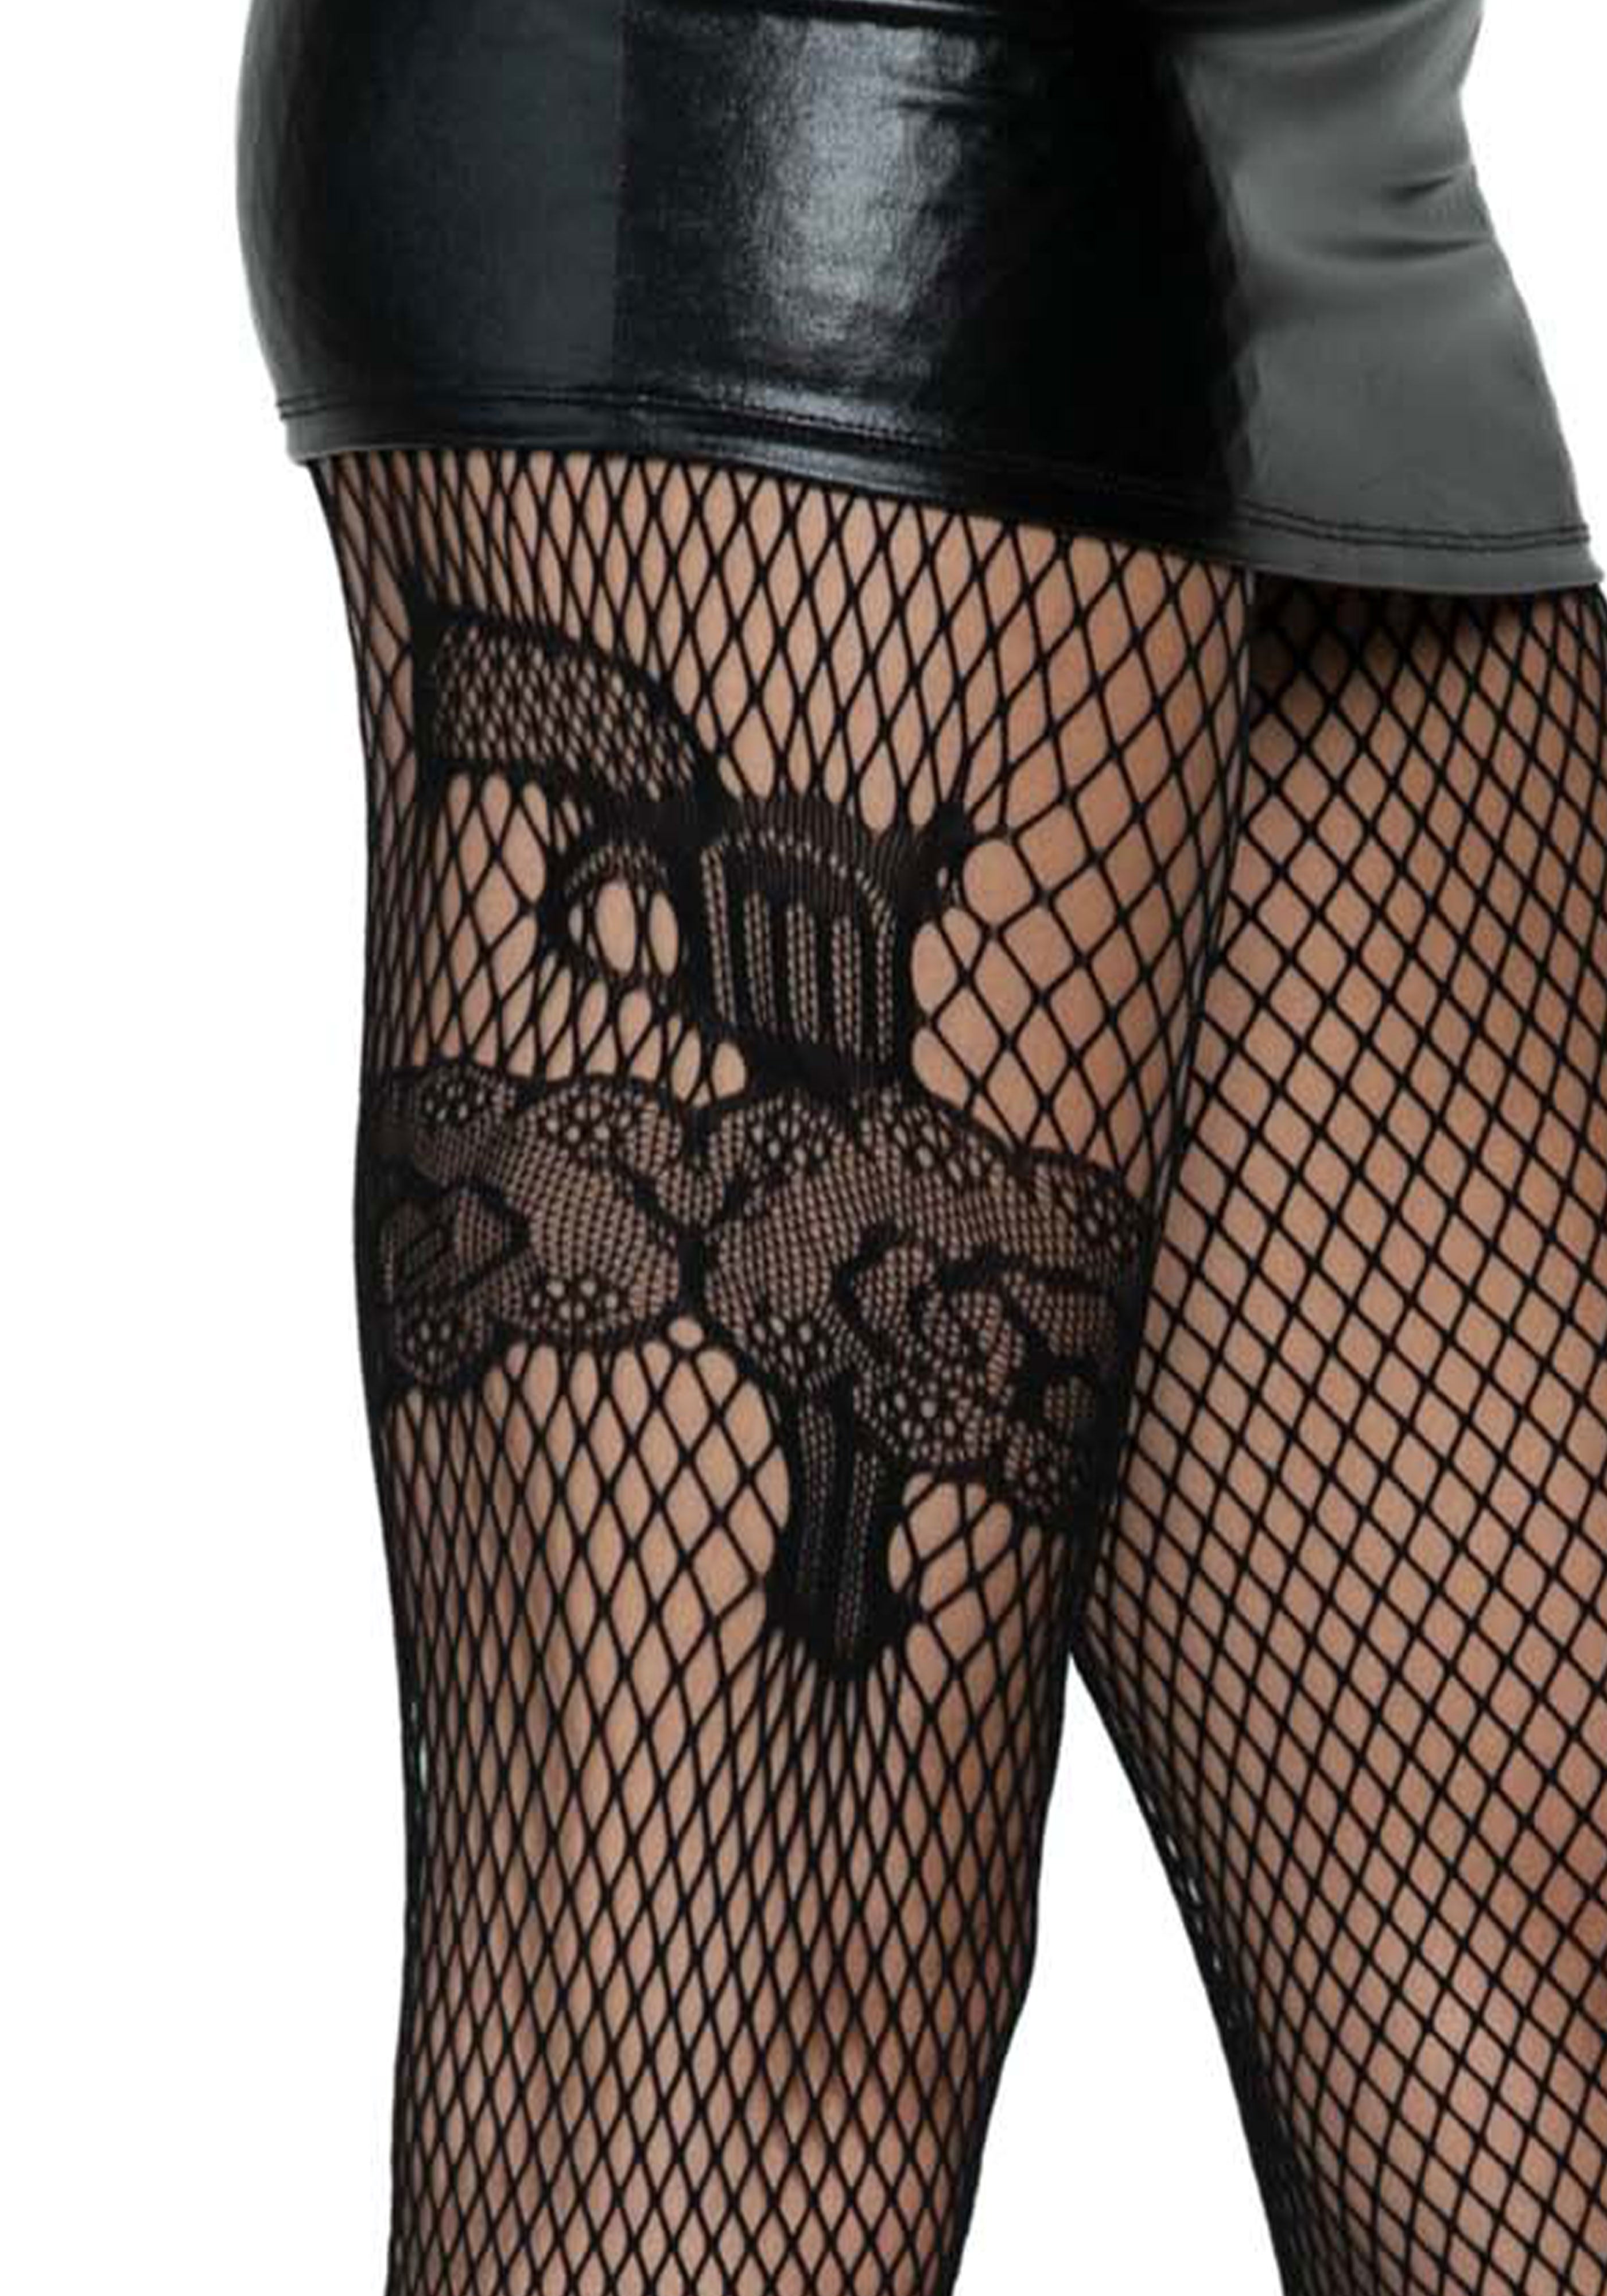 Leg Avenue 9720 Gunslinger garter net tights